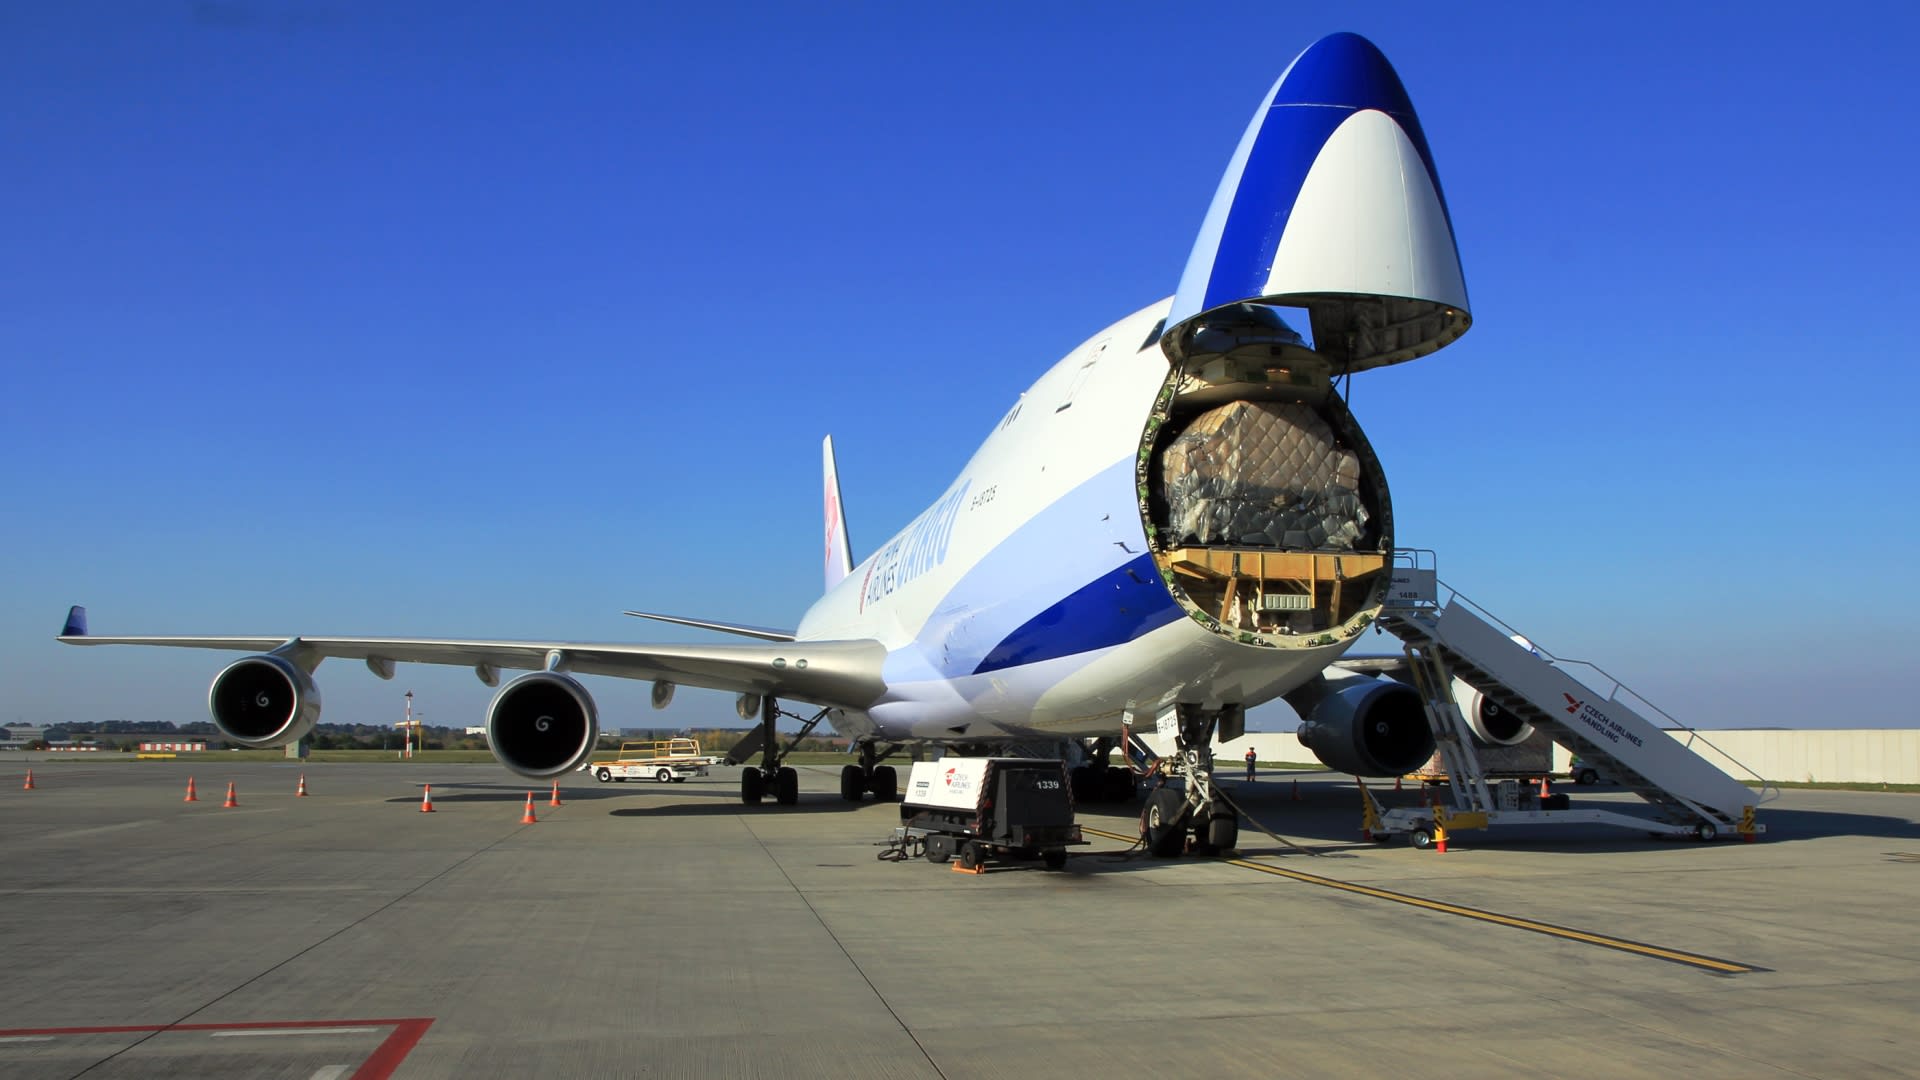 Nákladní Boeing 747-400F během nakládky zboží na Letišti Václava Havla Praha